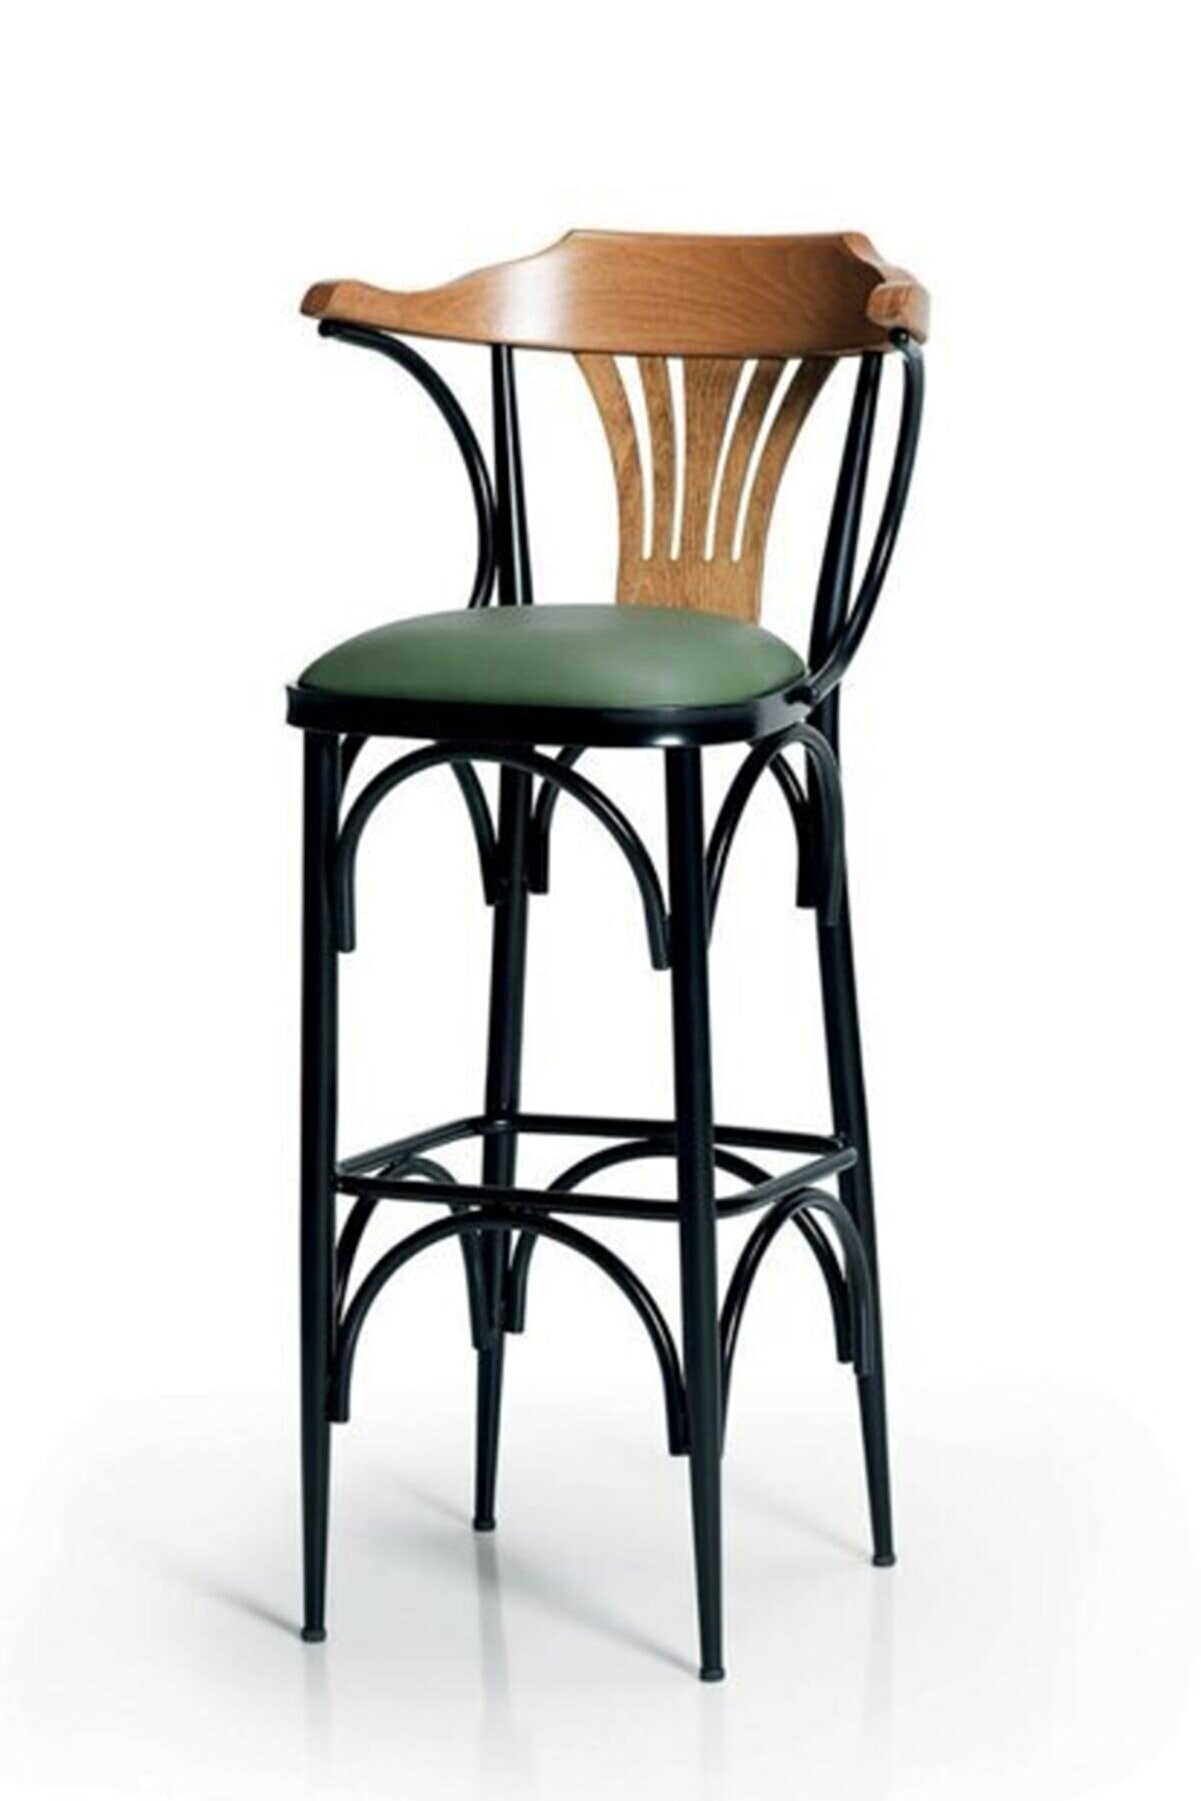 Mymassa Bar Sandalyesi - Yeşil - Düz Renk Deri Kumaş - Bar Sandalye Taburesi - Metal Siyah Ayak